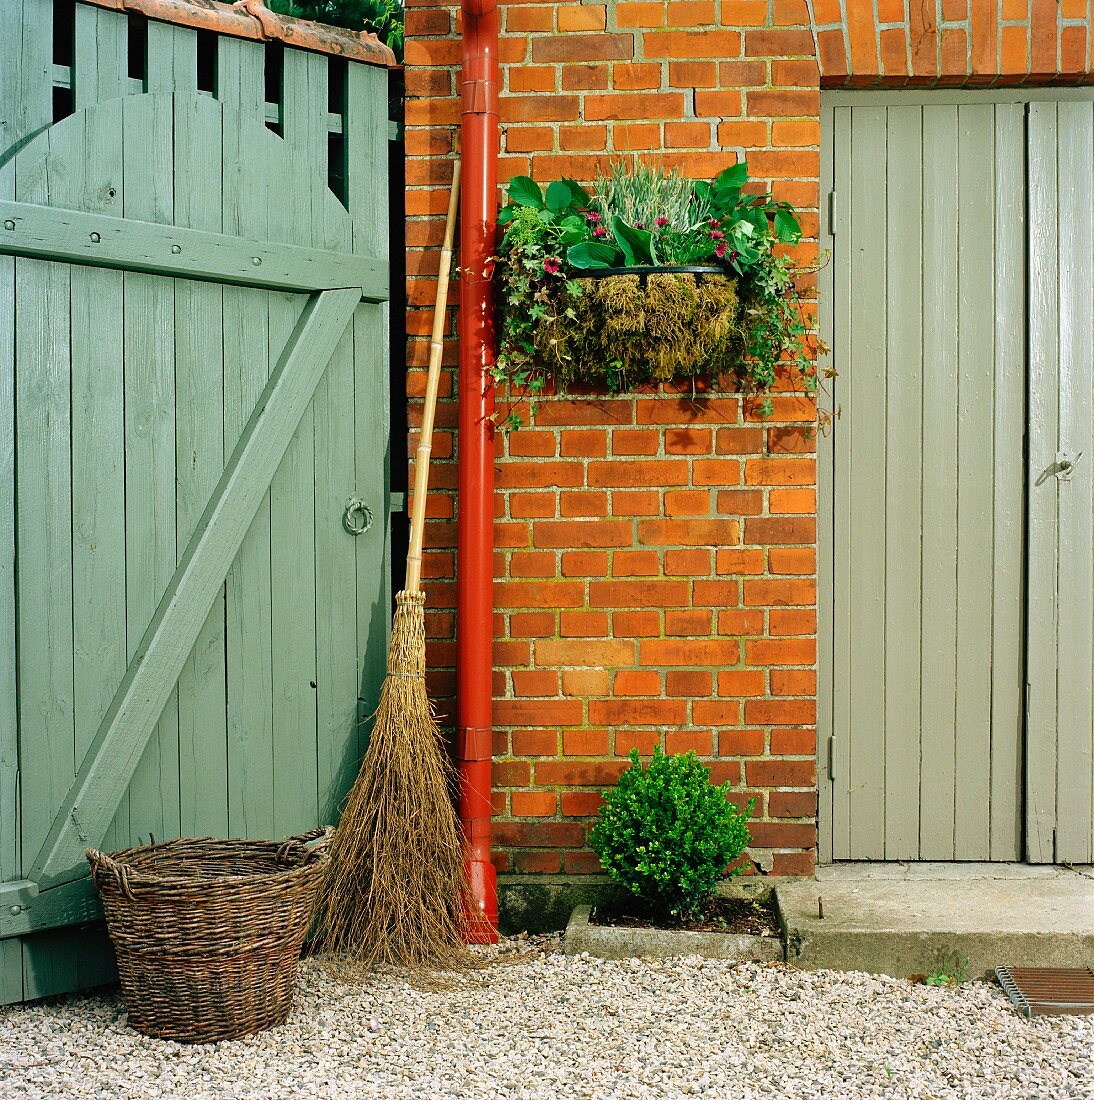 Besom broom, wicker basket & manger basket planted with autumnal arrangement on house facade